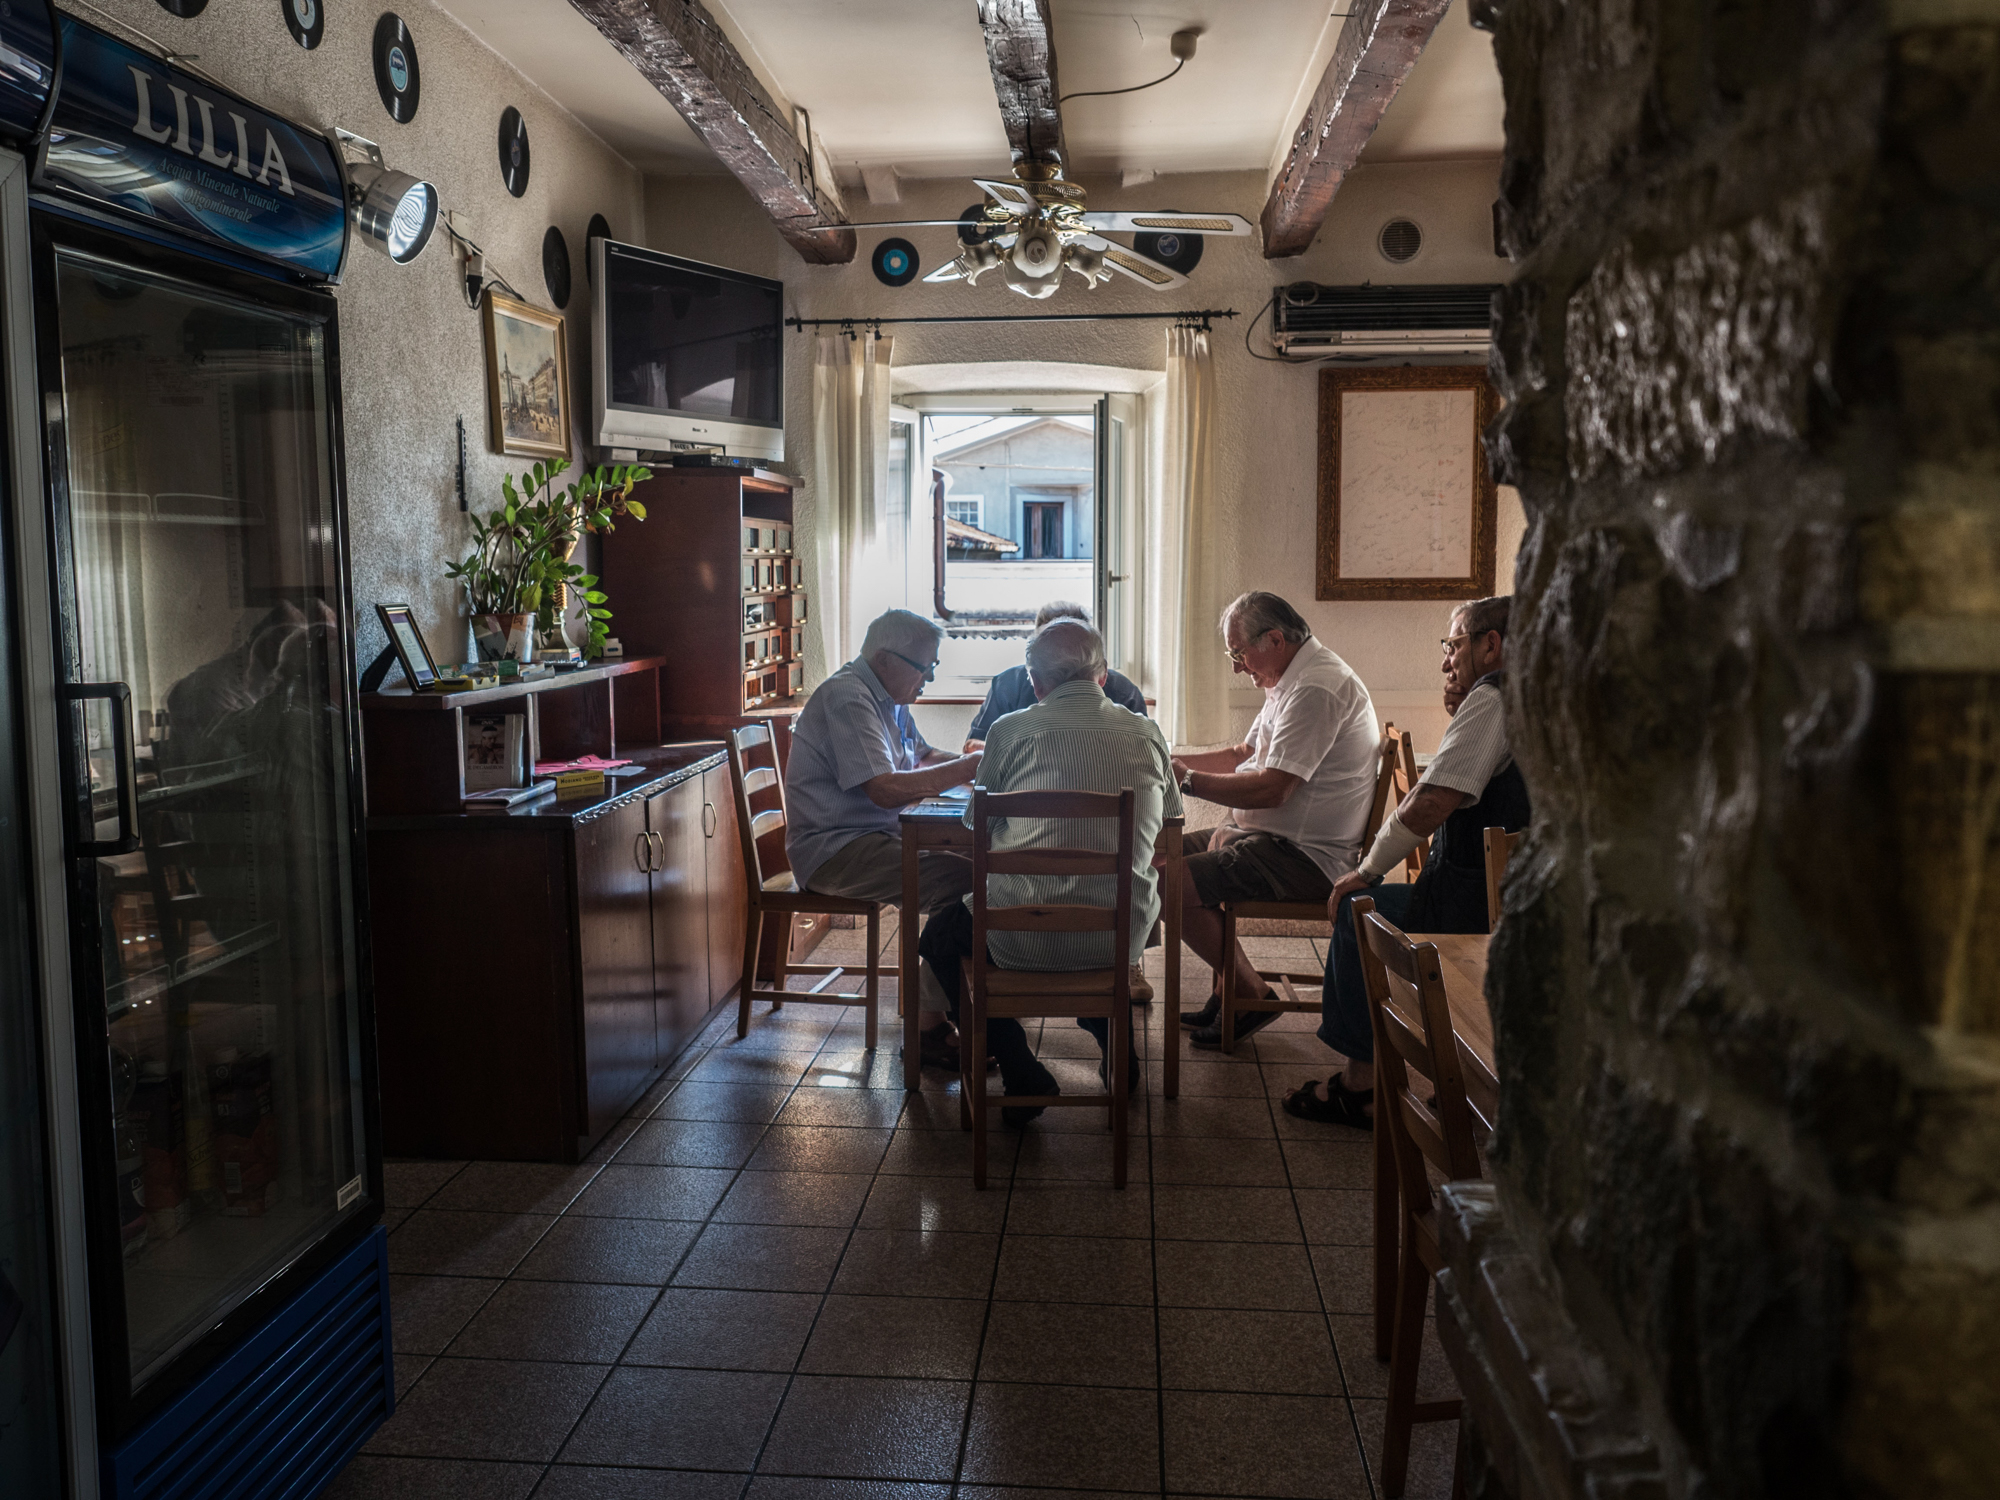  Alcuni anziani giocano a carte nel Circolo Arci "Falisca" nel rione di Servola. Secondo i dati Istat Trieste è fra le province con tasso di vecchiaia più elevato d'Italia. 